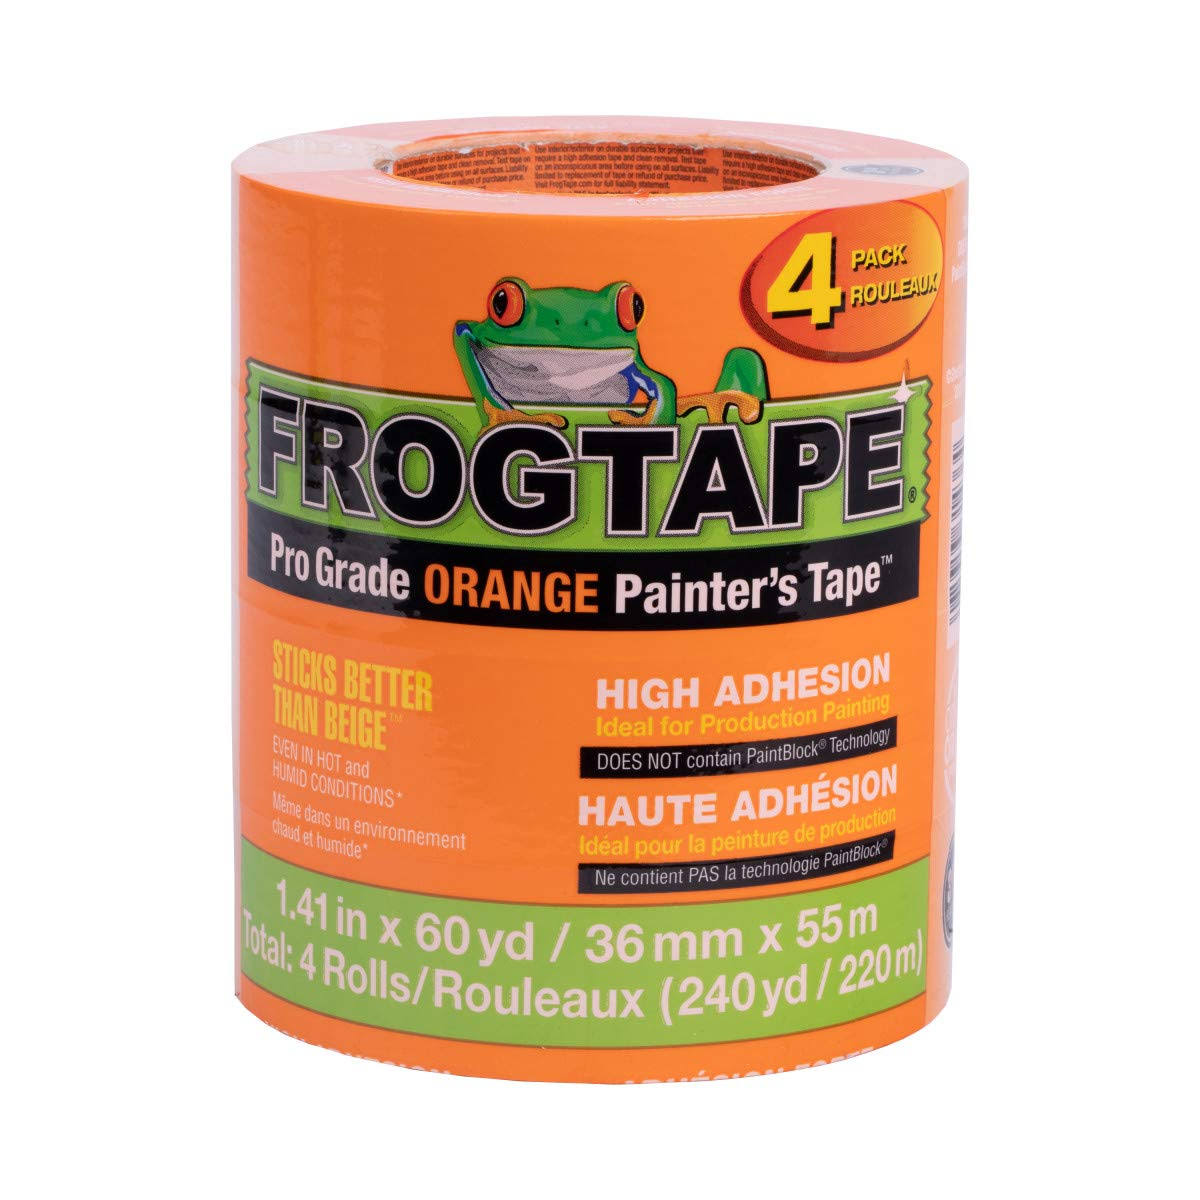 FrogTape Pro Grade Orange Painter’s Tape, Each Roll 1.41 in. x 60 yd, 4-Pack